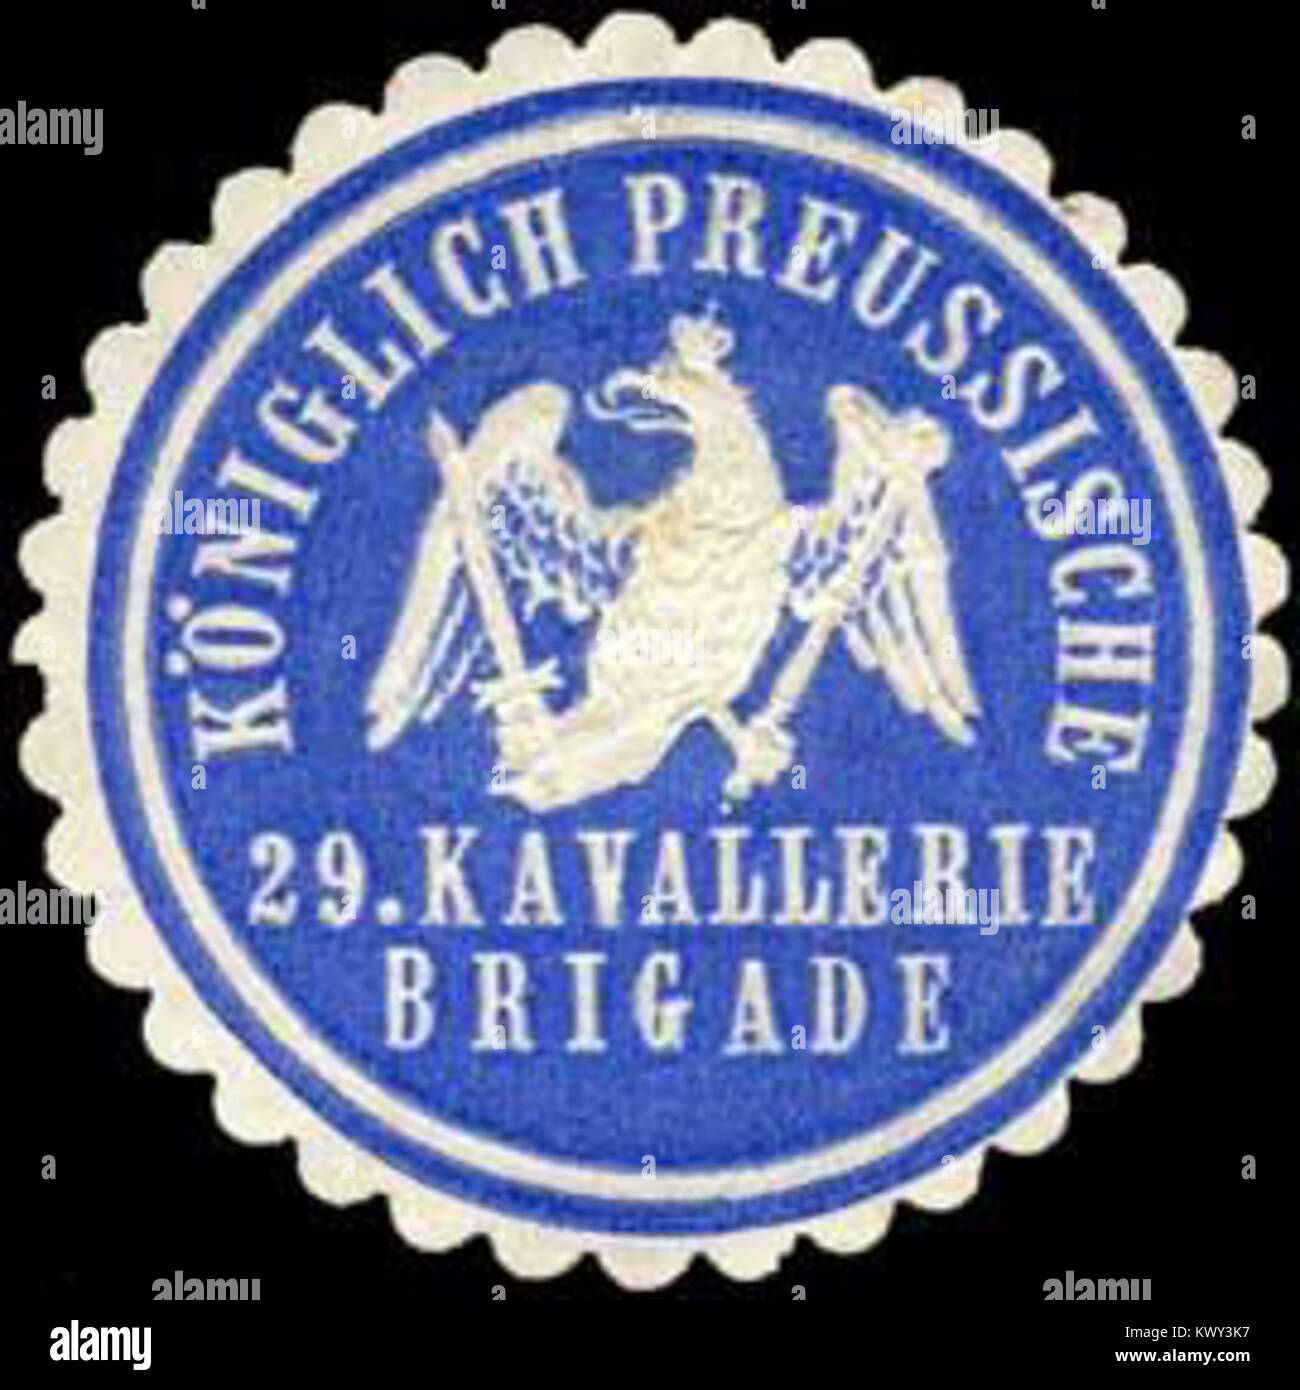 Siegelmarke Königlich Preussische 29. Kavallerie Brigade W0238074 Stock Photo